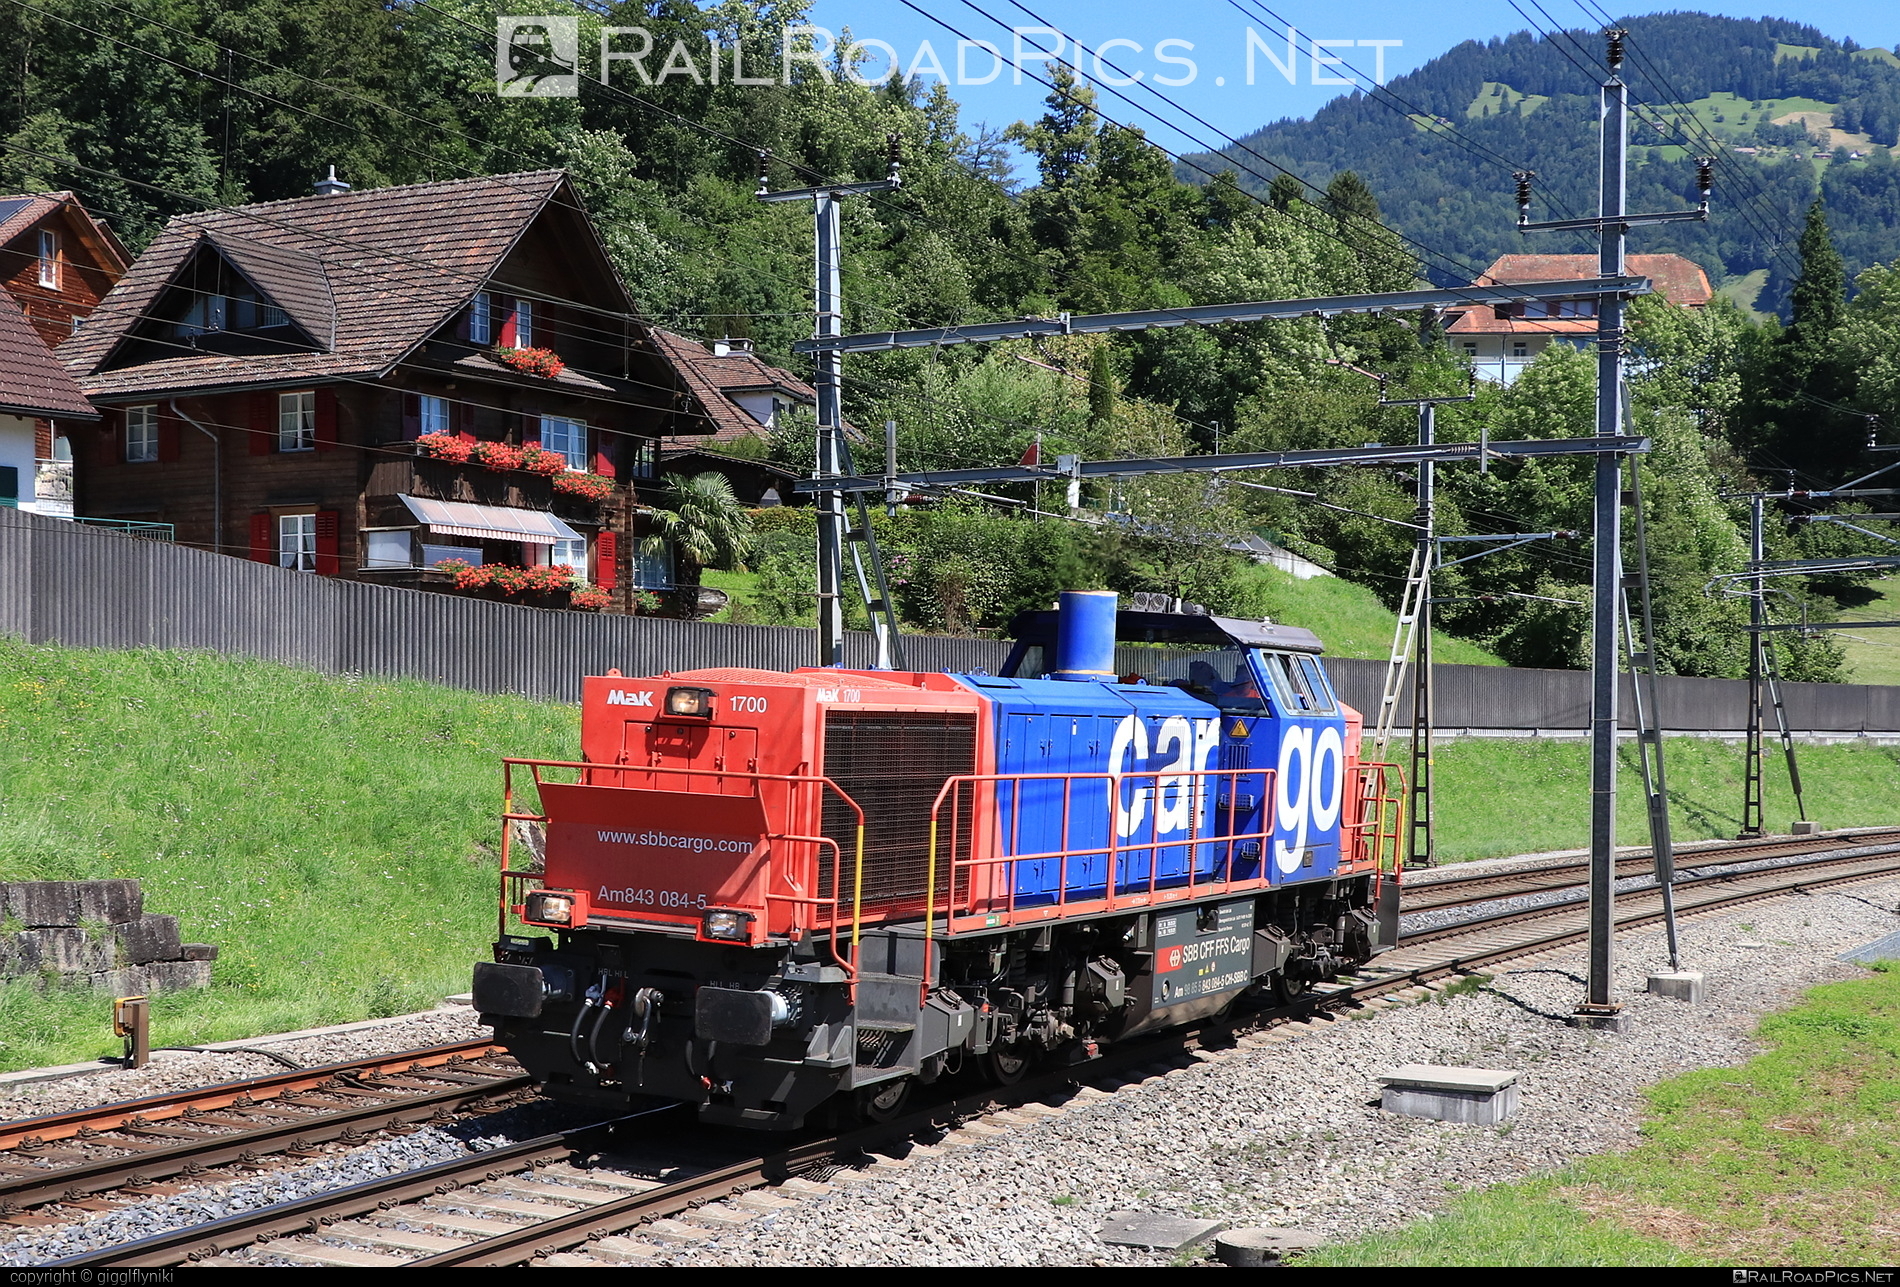 SBB Class AM 843 - 843 084-5 operated by Schweizerische Bundesbahnen SBB Cargo AG #SchweizerischeBundesbahnen #SchweizerischeBundesbahnenCargo #am843 #sbb #sbbClassAm843 #sbbc #vosslohAm843